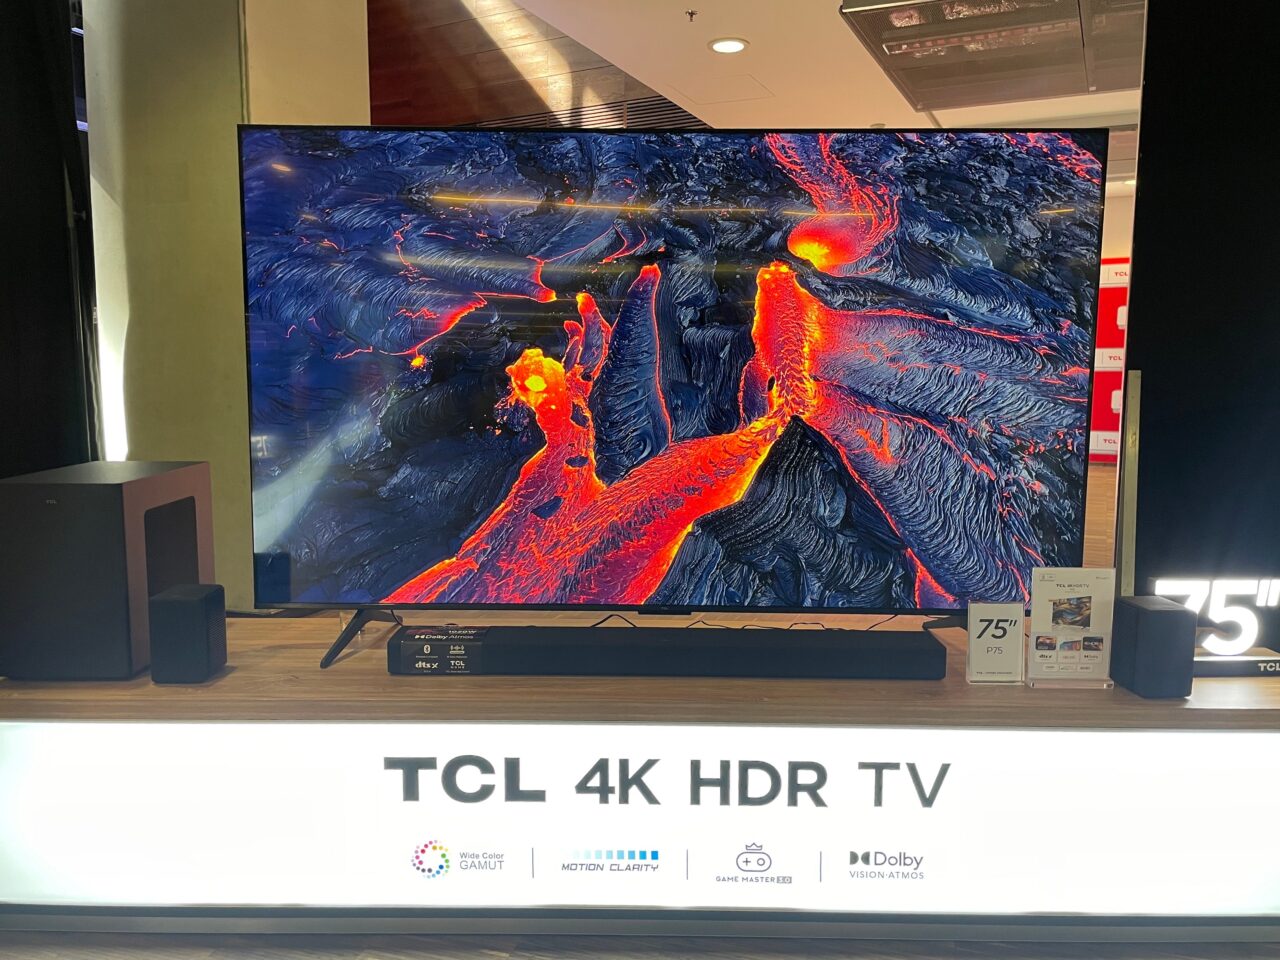 Telewizor TCL 4K HDR 75 cali prezentujący obraz lawy płynącej przez skaliste tereny.